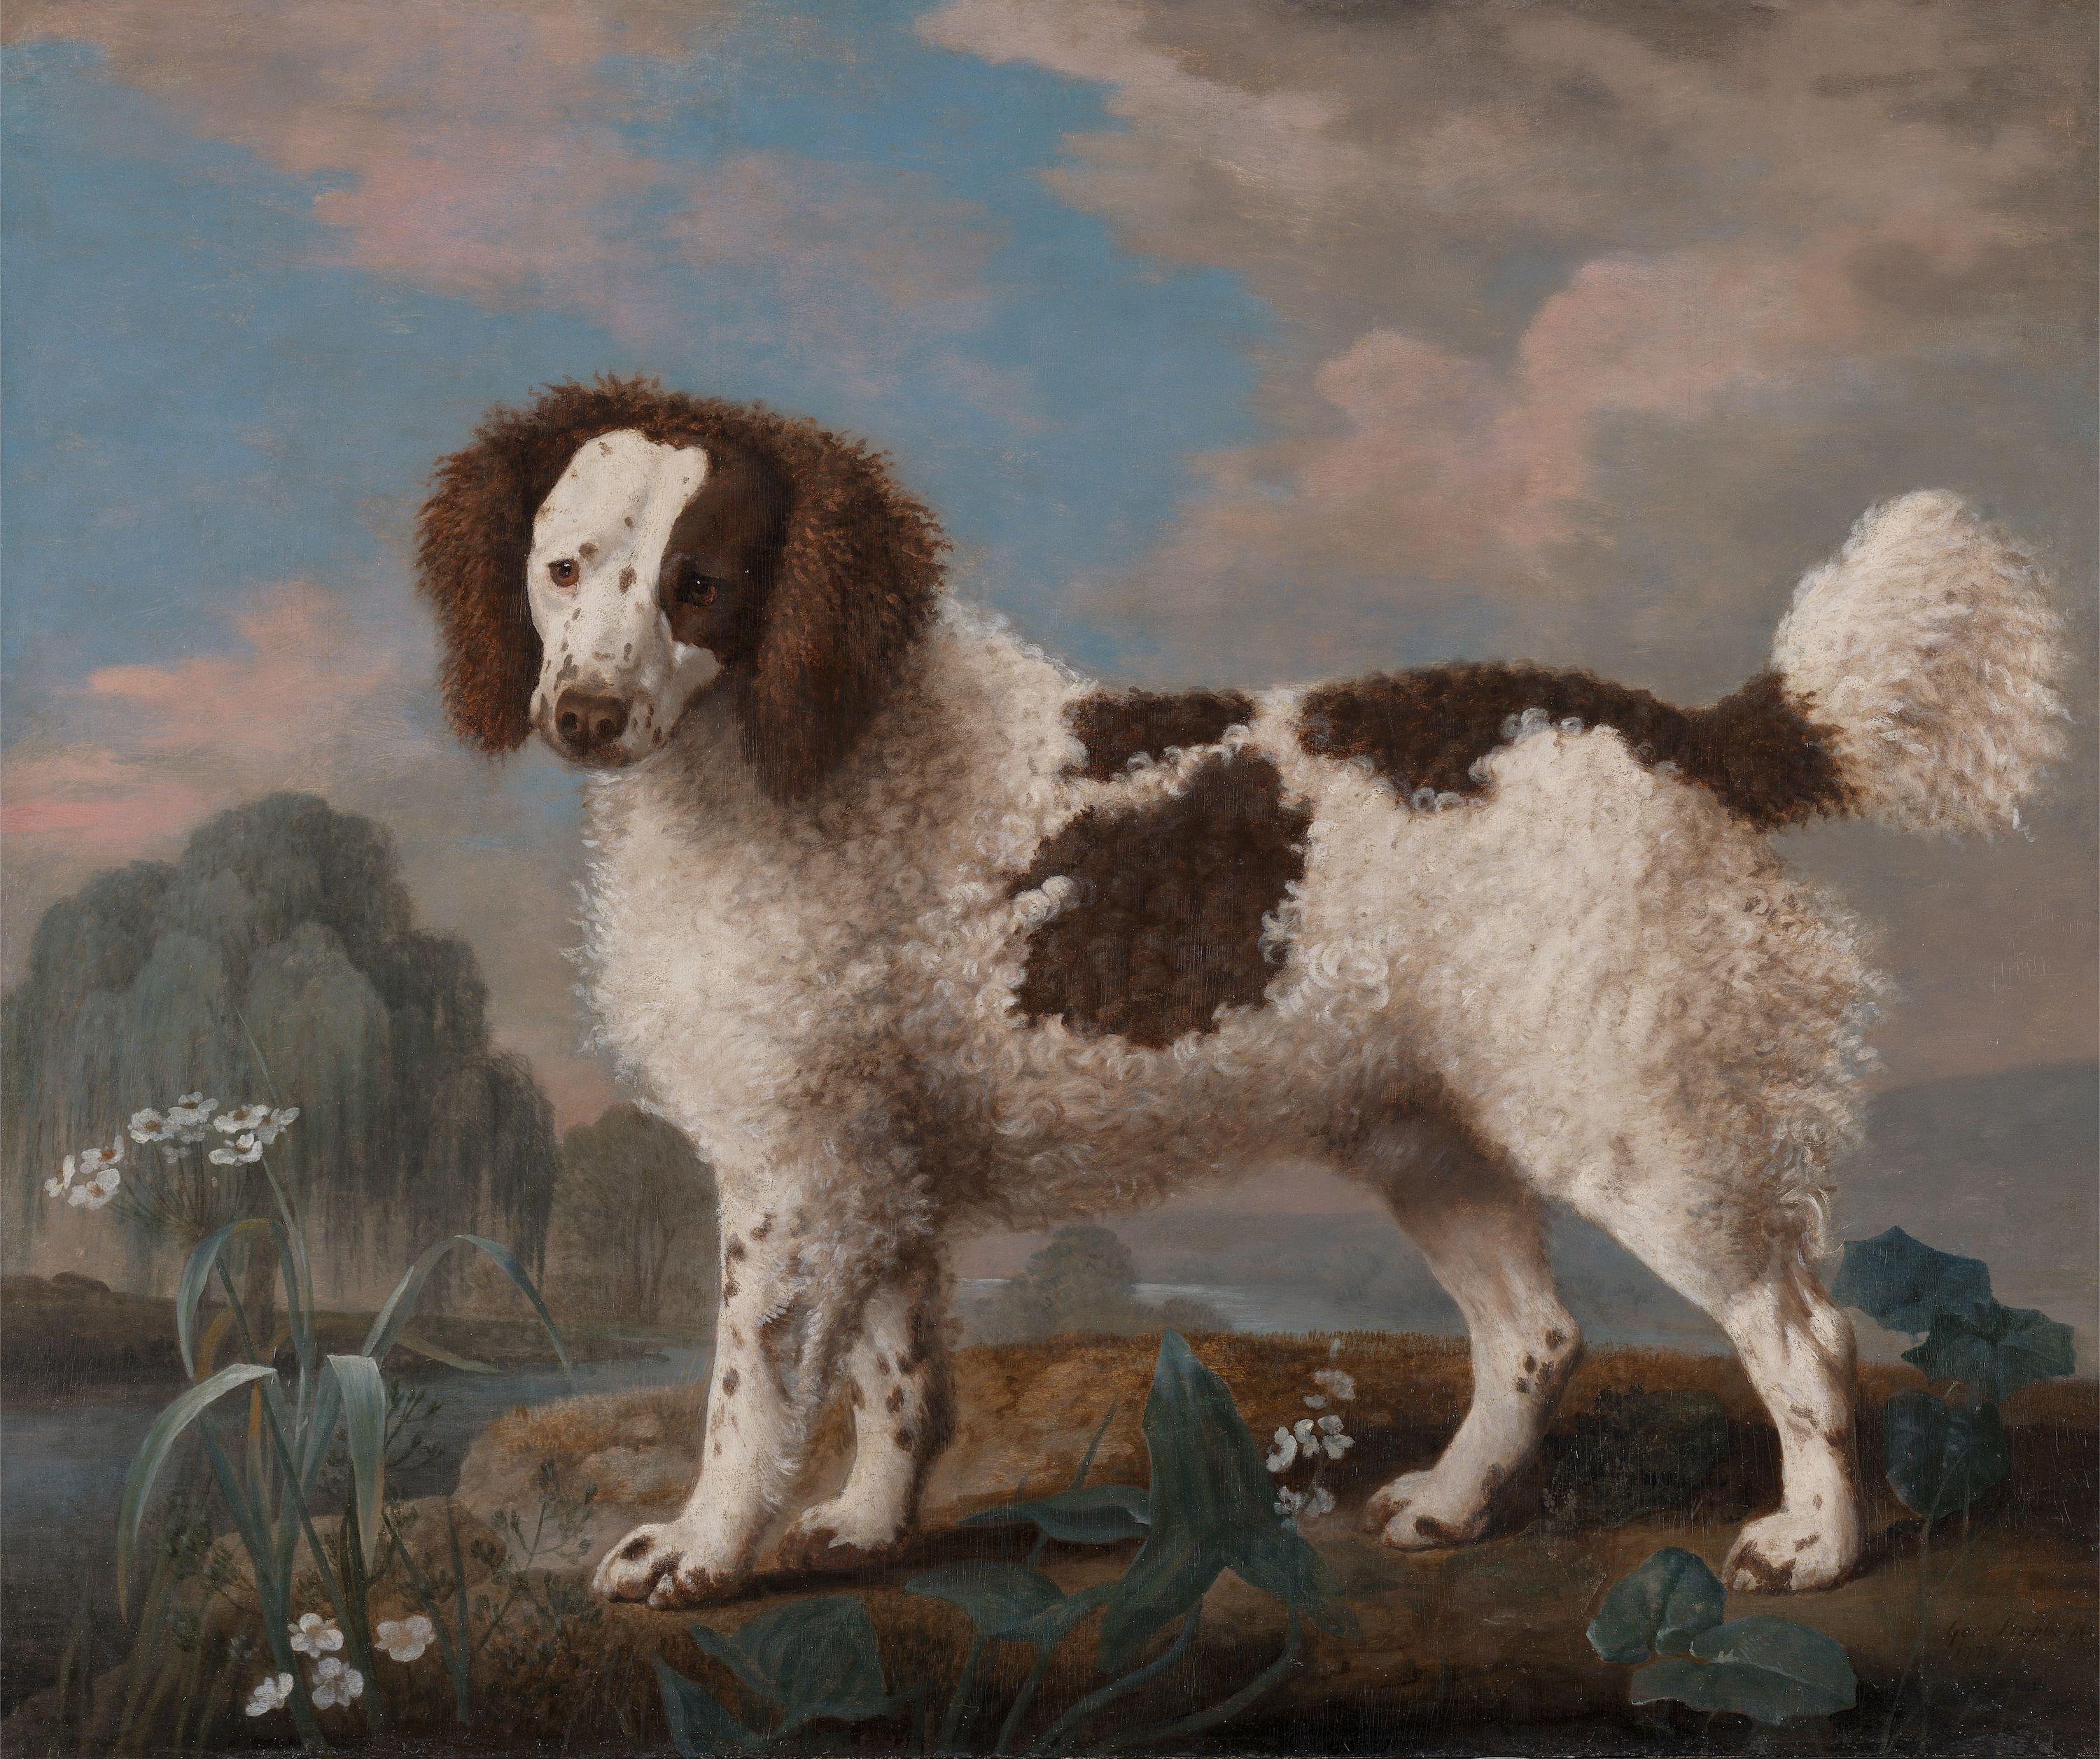 Norfolk o perro de agua marrón y blanco by George Stubbs - 1778 - 80,6 x 97,2 cm Yale Center for British Art